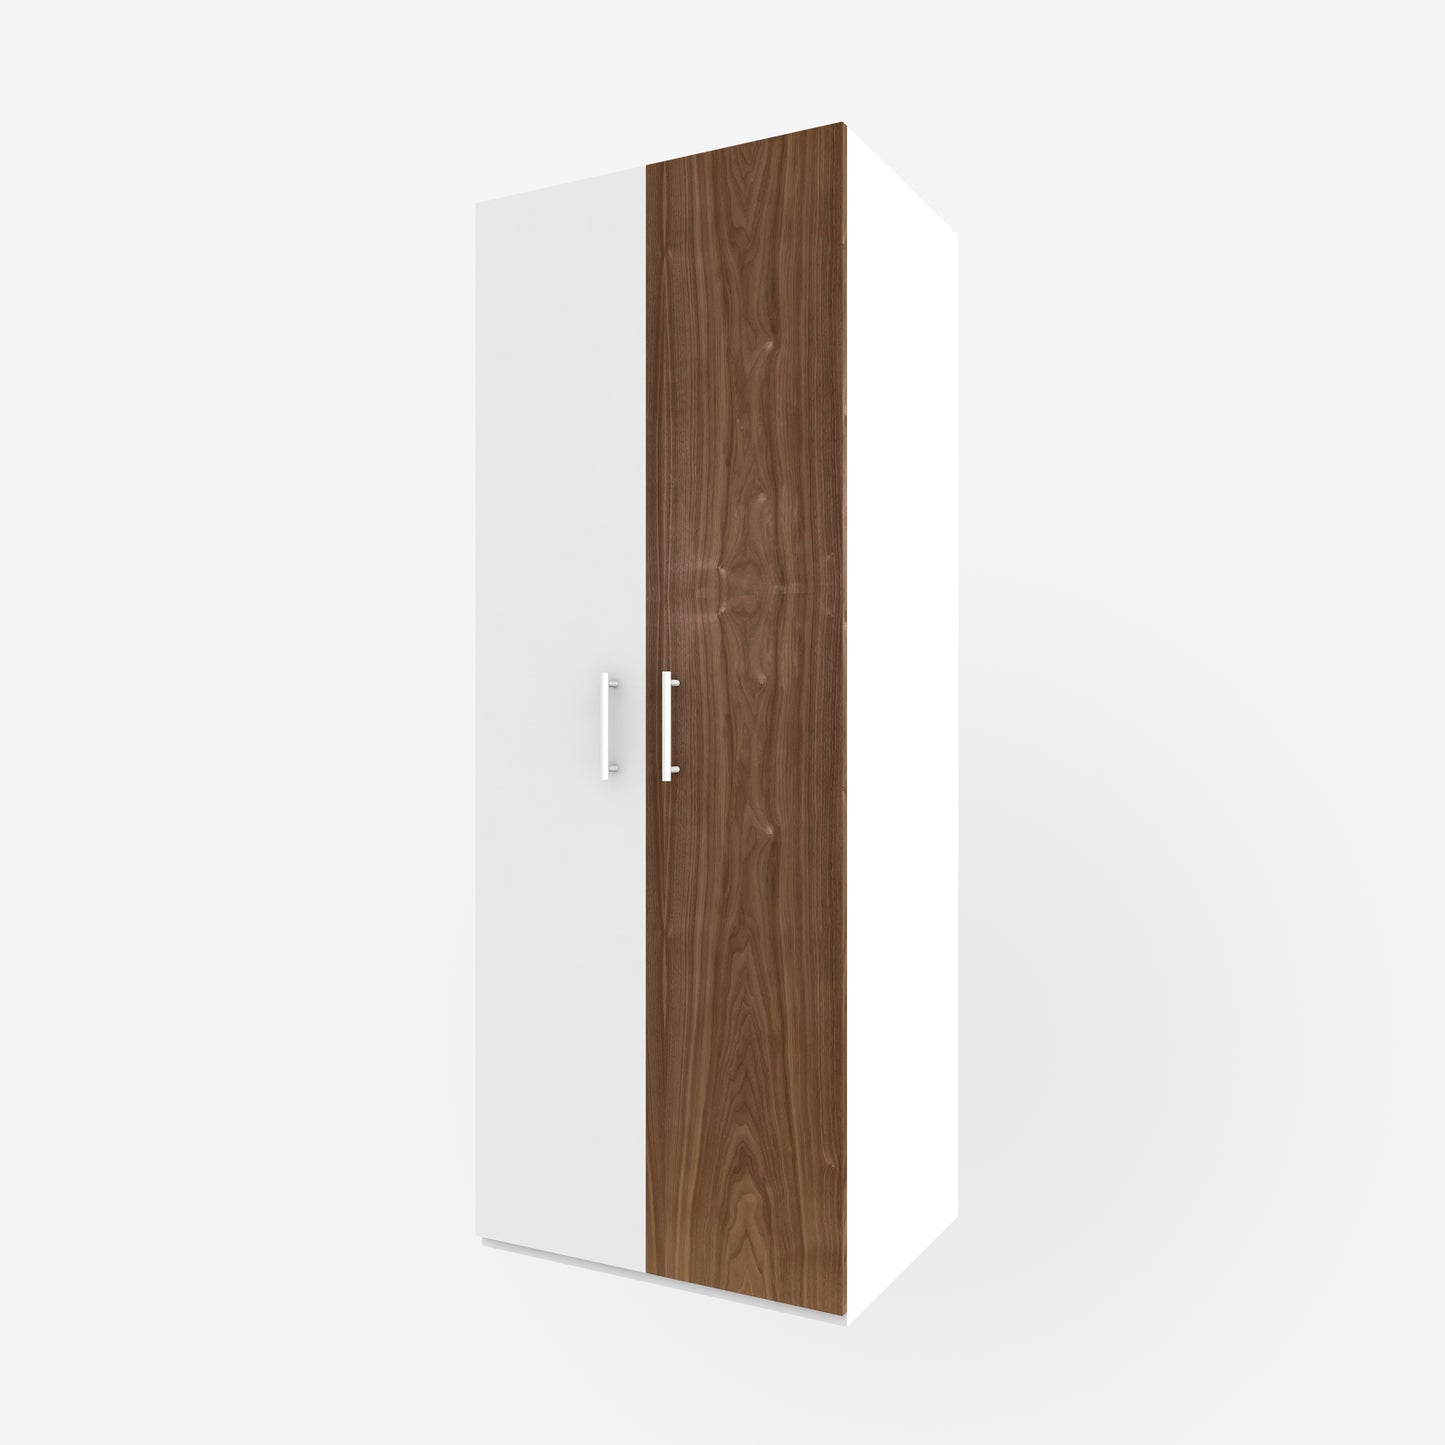 Walnut Door for Pax, Vertical Grain - Real Wood Veneer